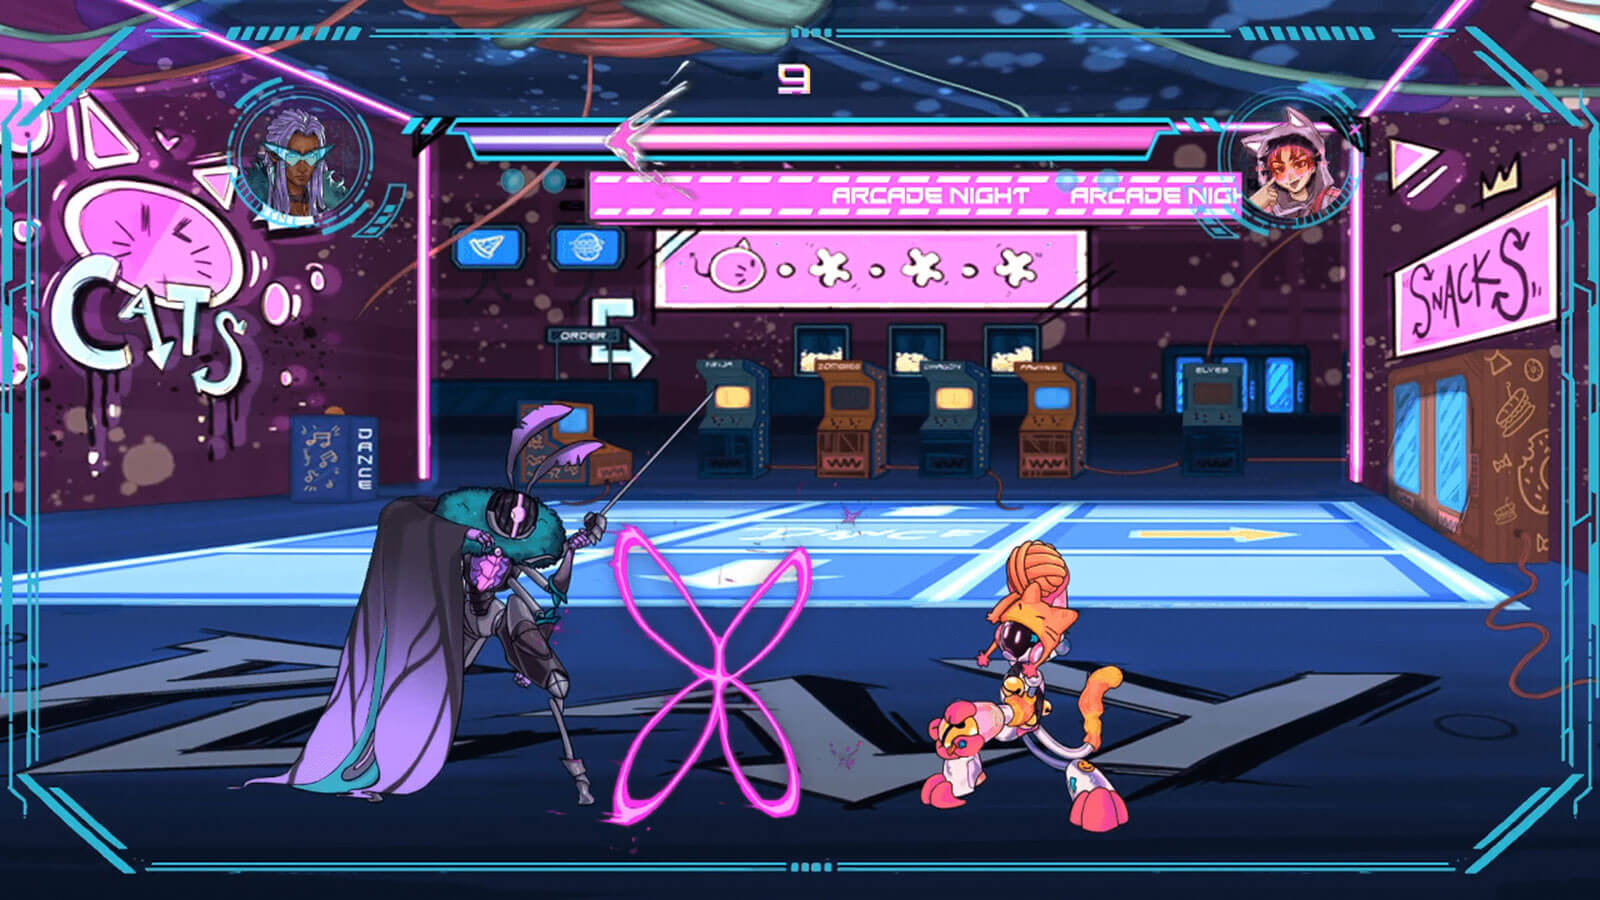 Kai y Aylo están luchando en la zona de arcade.